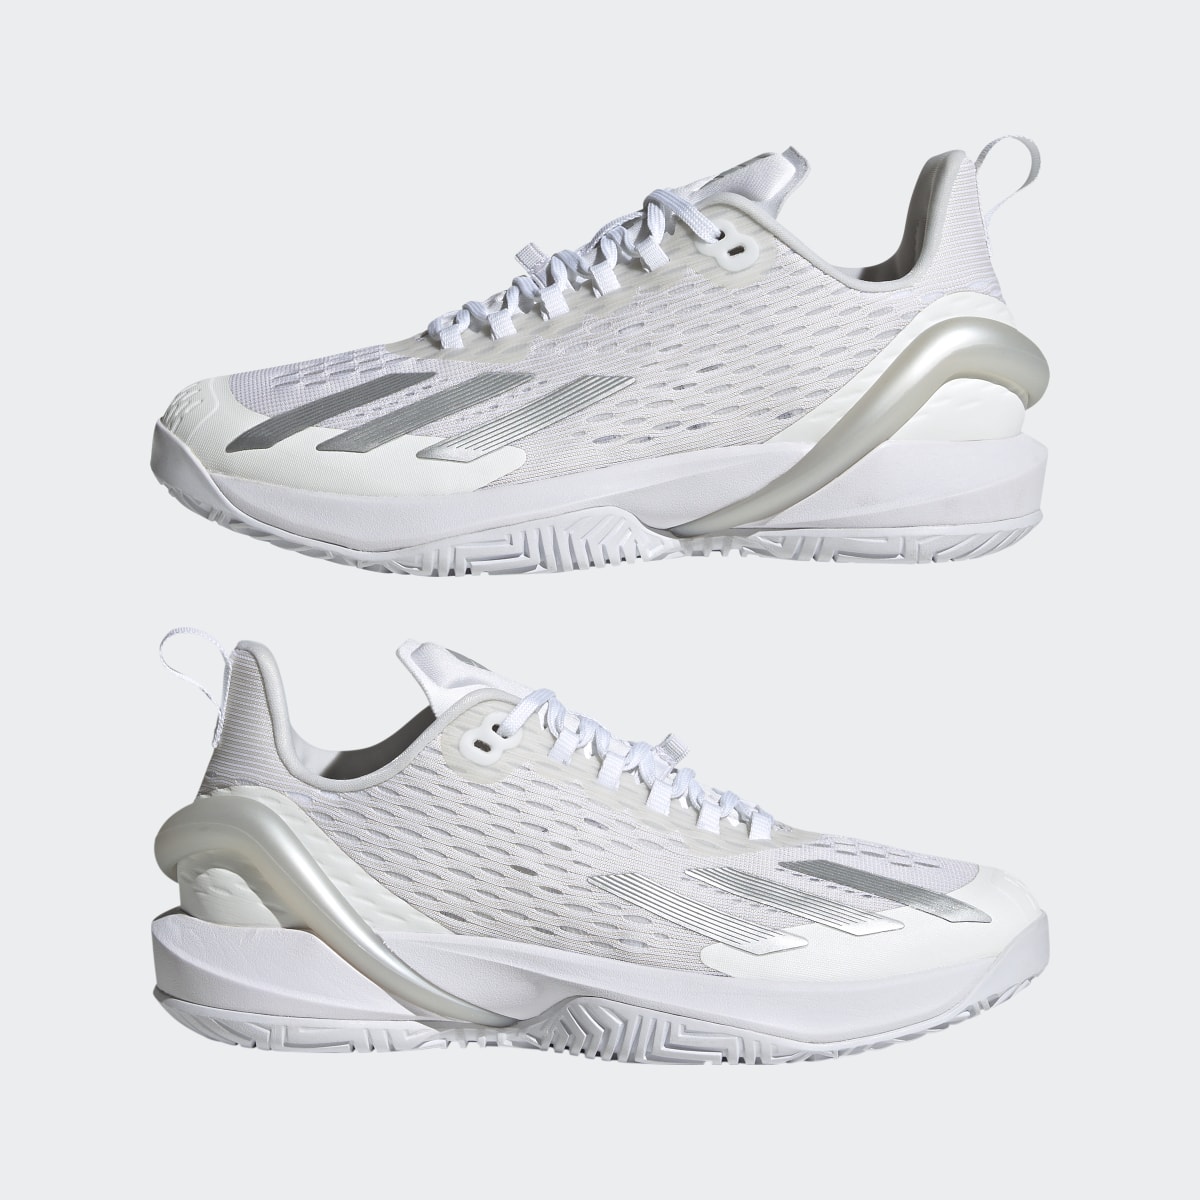 Adidas adizero Cybersonic Tennis Shoes. 11